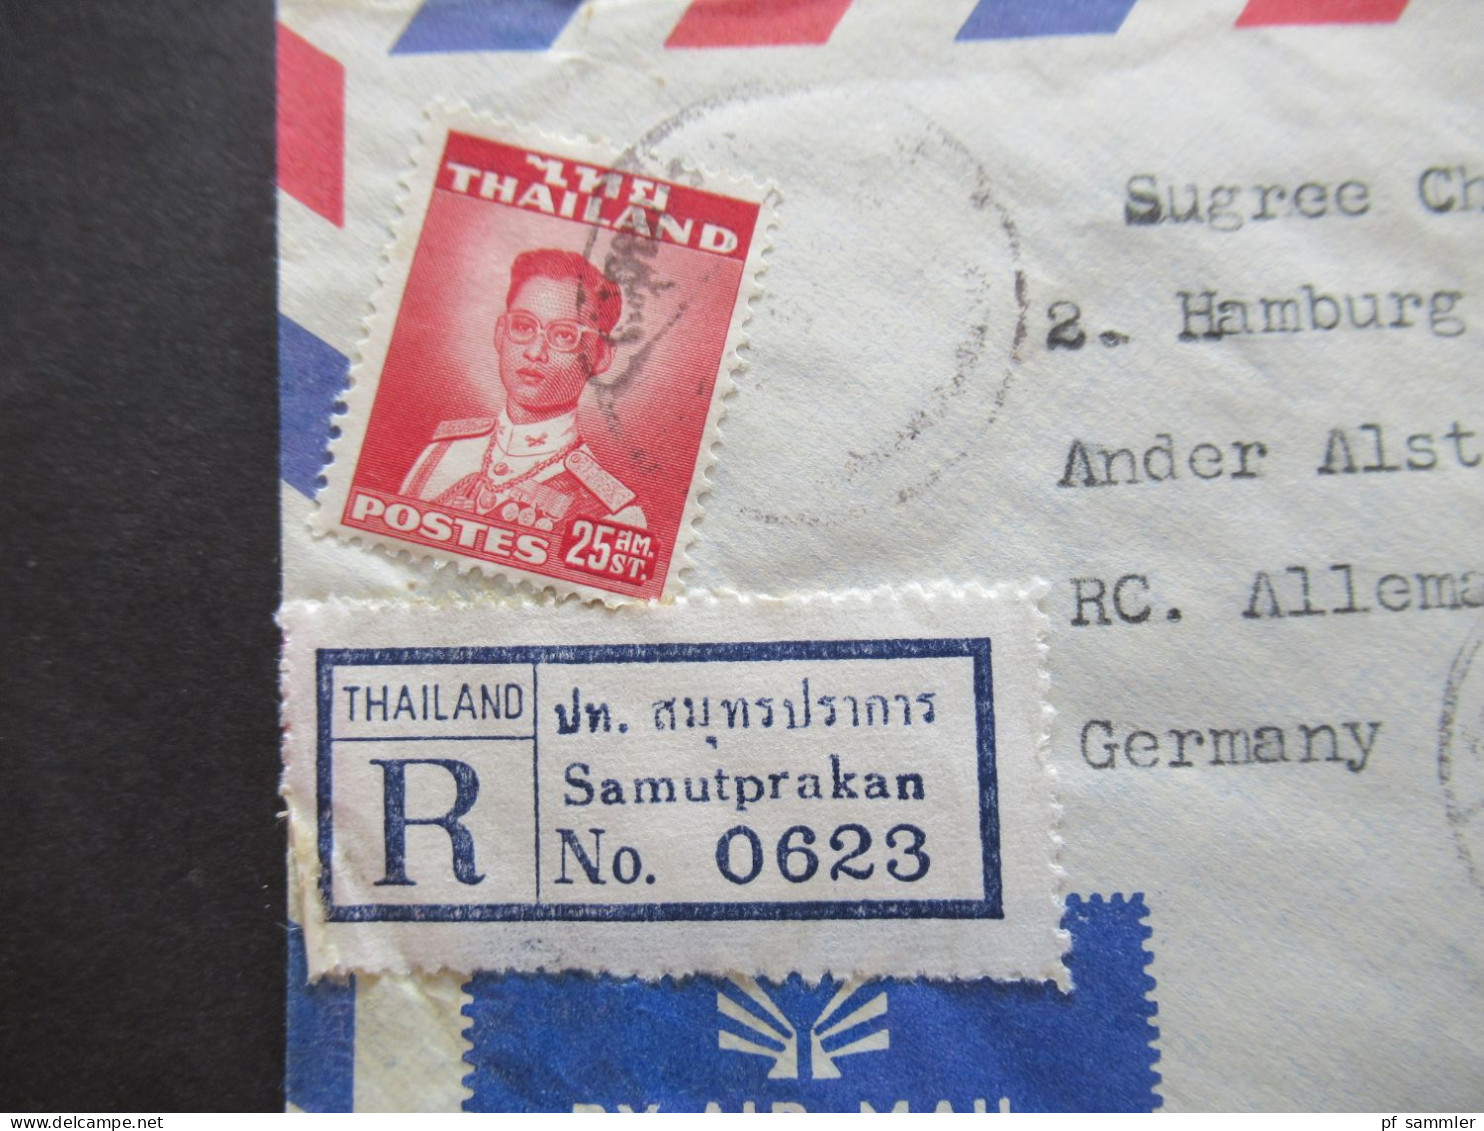 Asien Thailand 1965 Einschreiben / Registered Letter Luftpost / Air Mail Samutprakan - Hamburg - Thaïlande